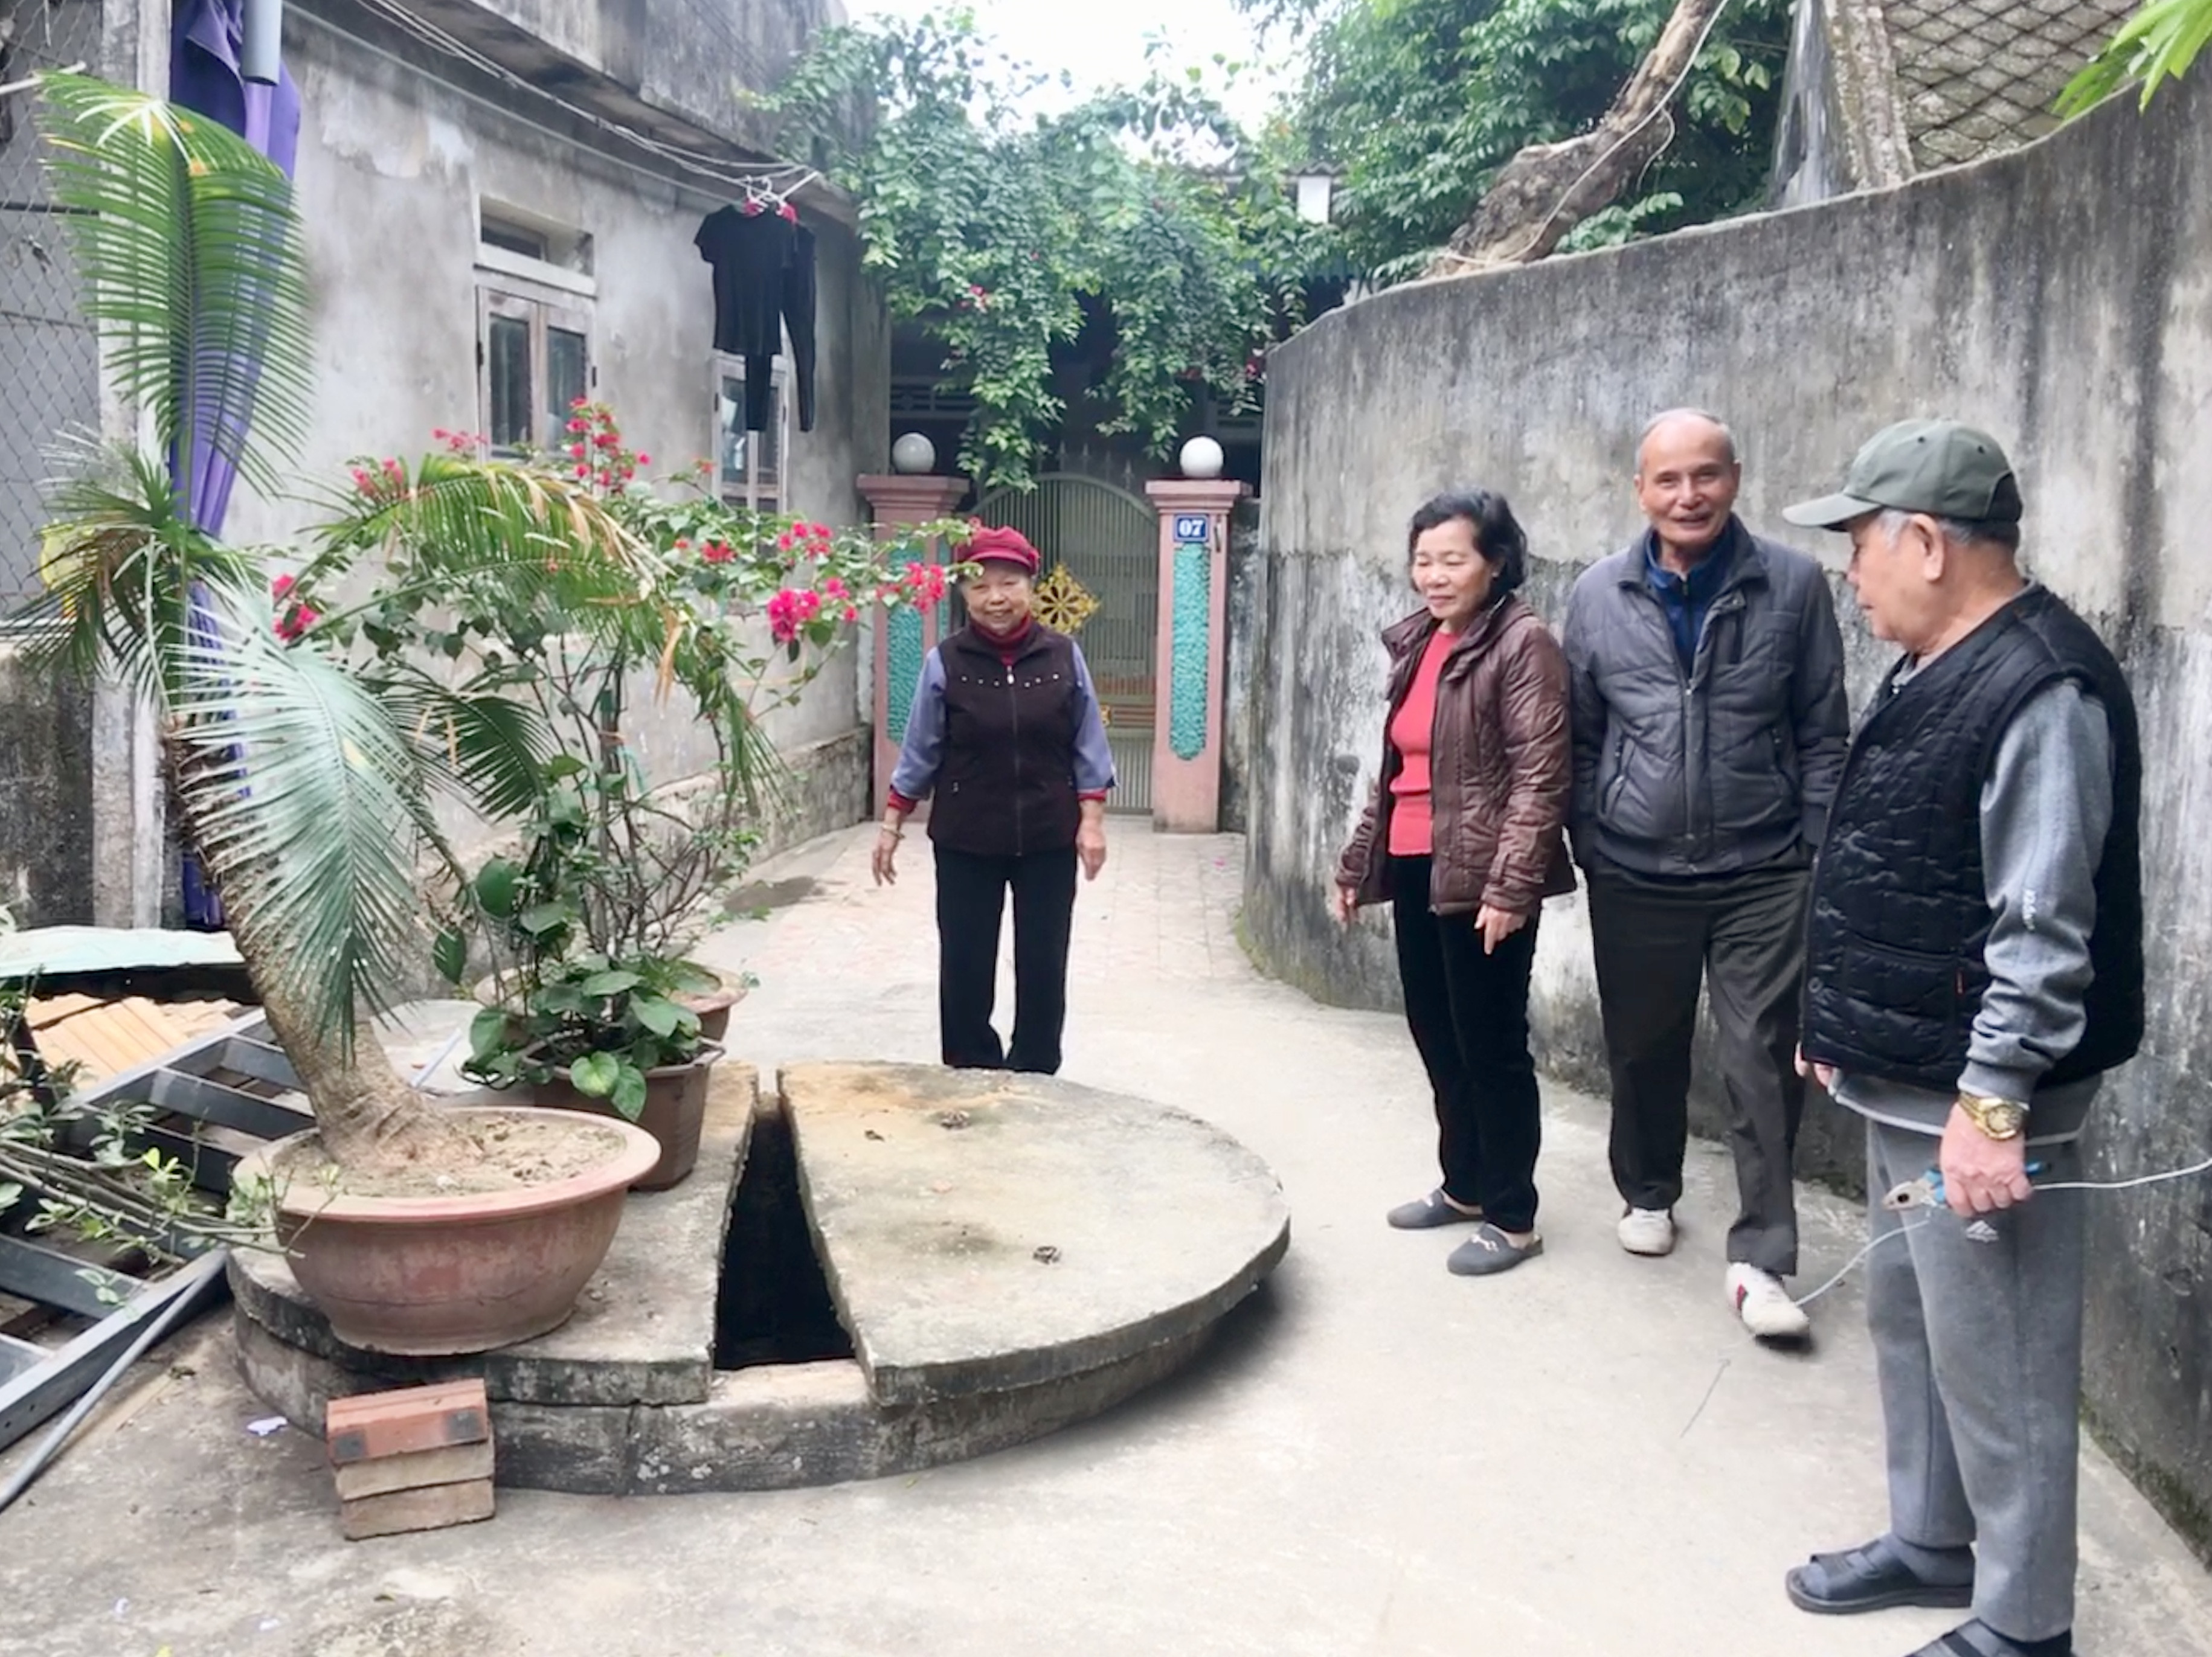 Giếng Đồn Đô Lương hiện nay vẫn tồn tại, nằm trong khu dân cư thuộc khối 3 Thị Trấn- Đô Lương. Thời trước giếng là nơi binh lính sử dụng để sinh hoạt.